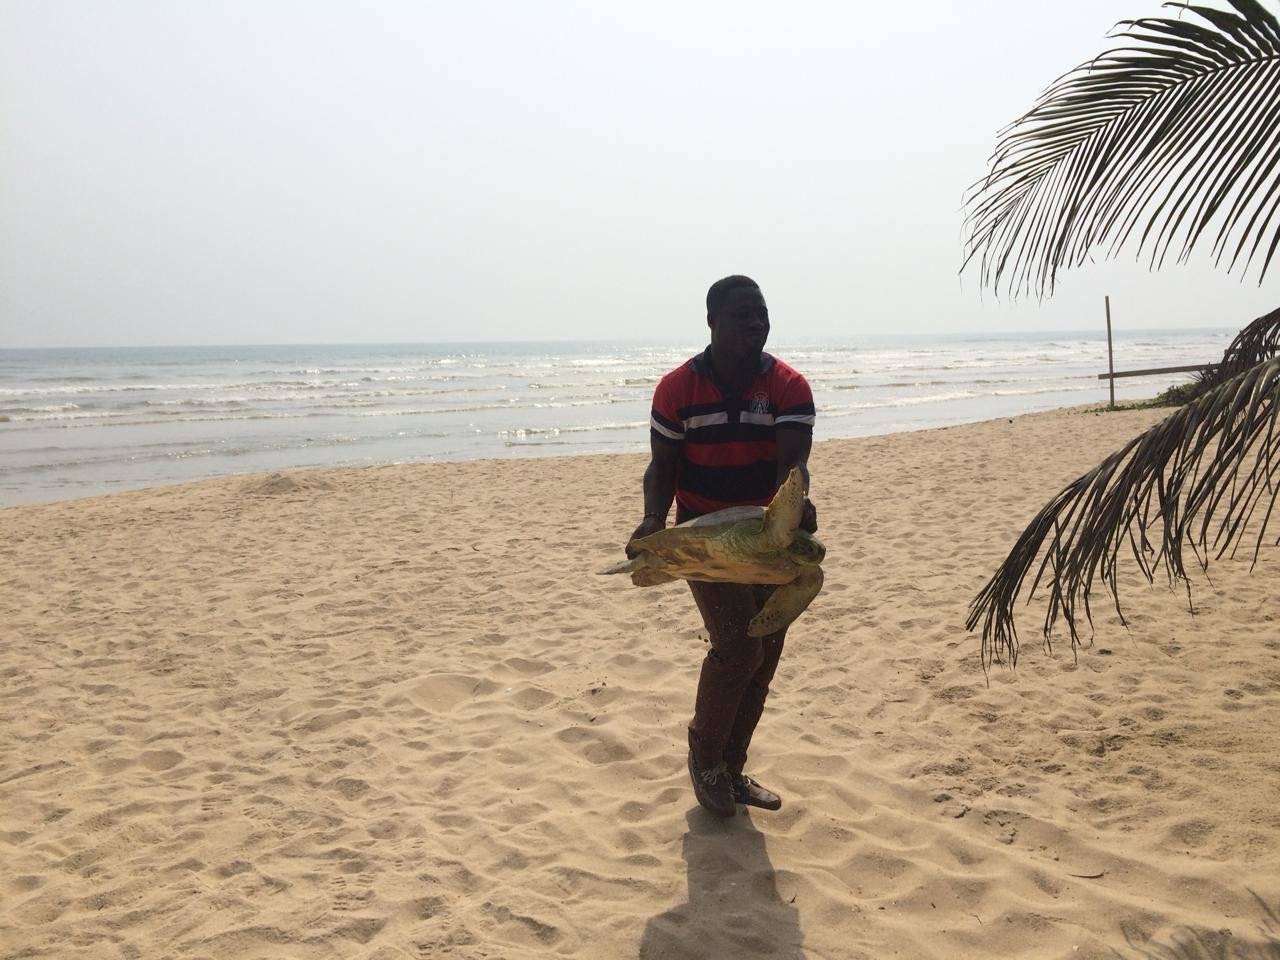 aifs-ghana-freiwilligenarbeit-naturschutz-tier-schildkoete-strand-person